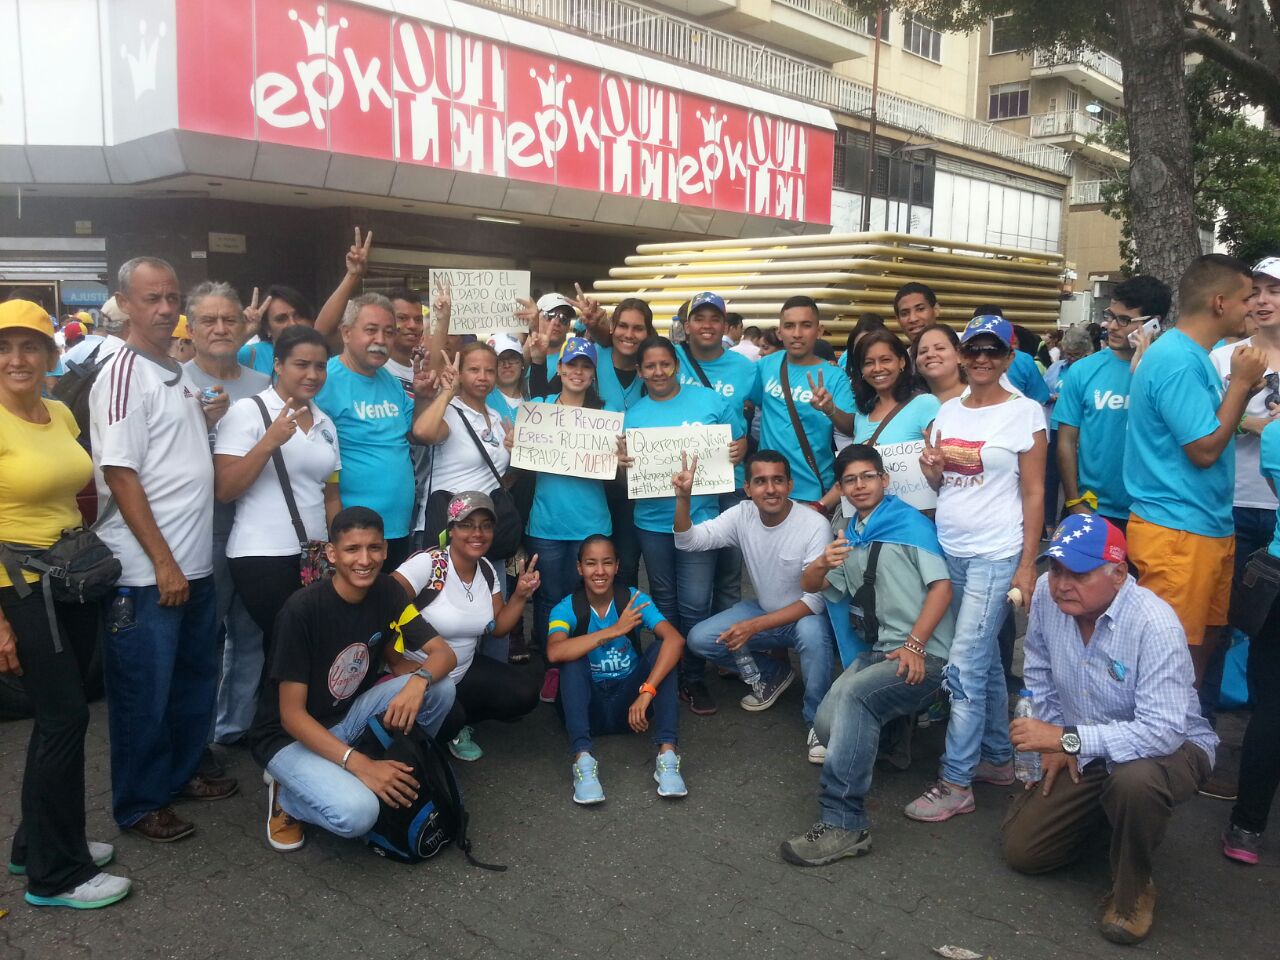 Vente Vargas sobre condiciones impuestas por CNE: “Están violando la Constitución”